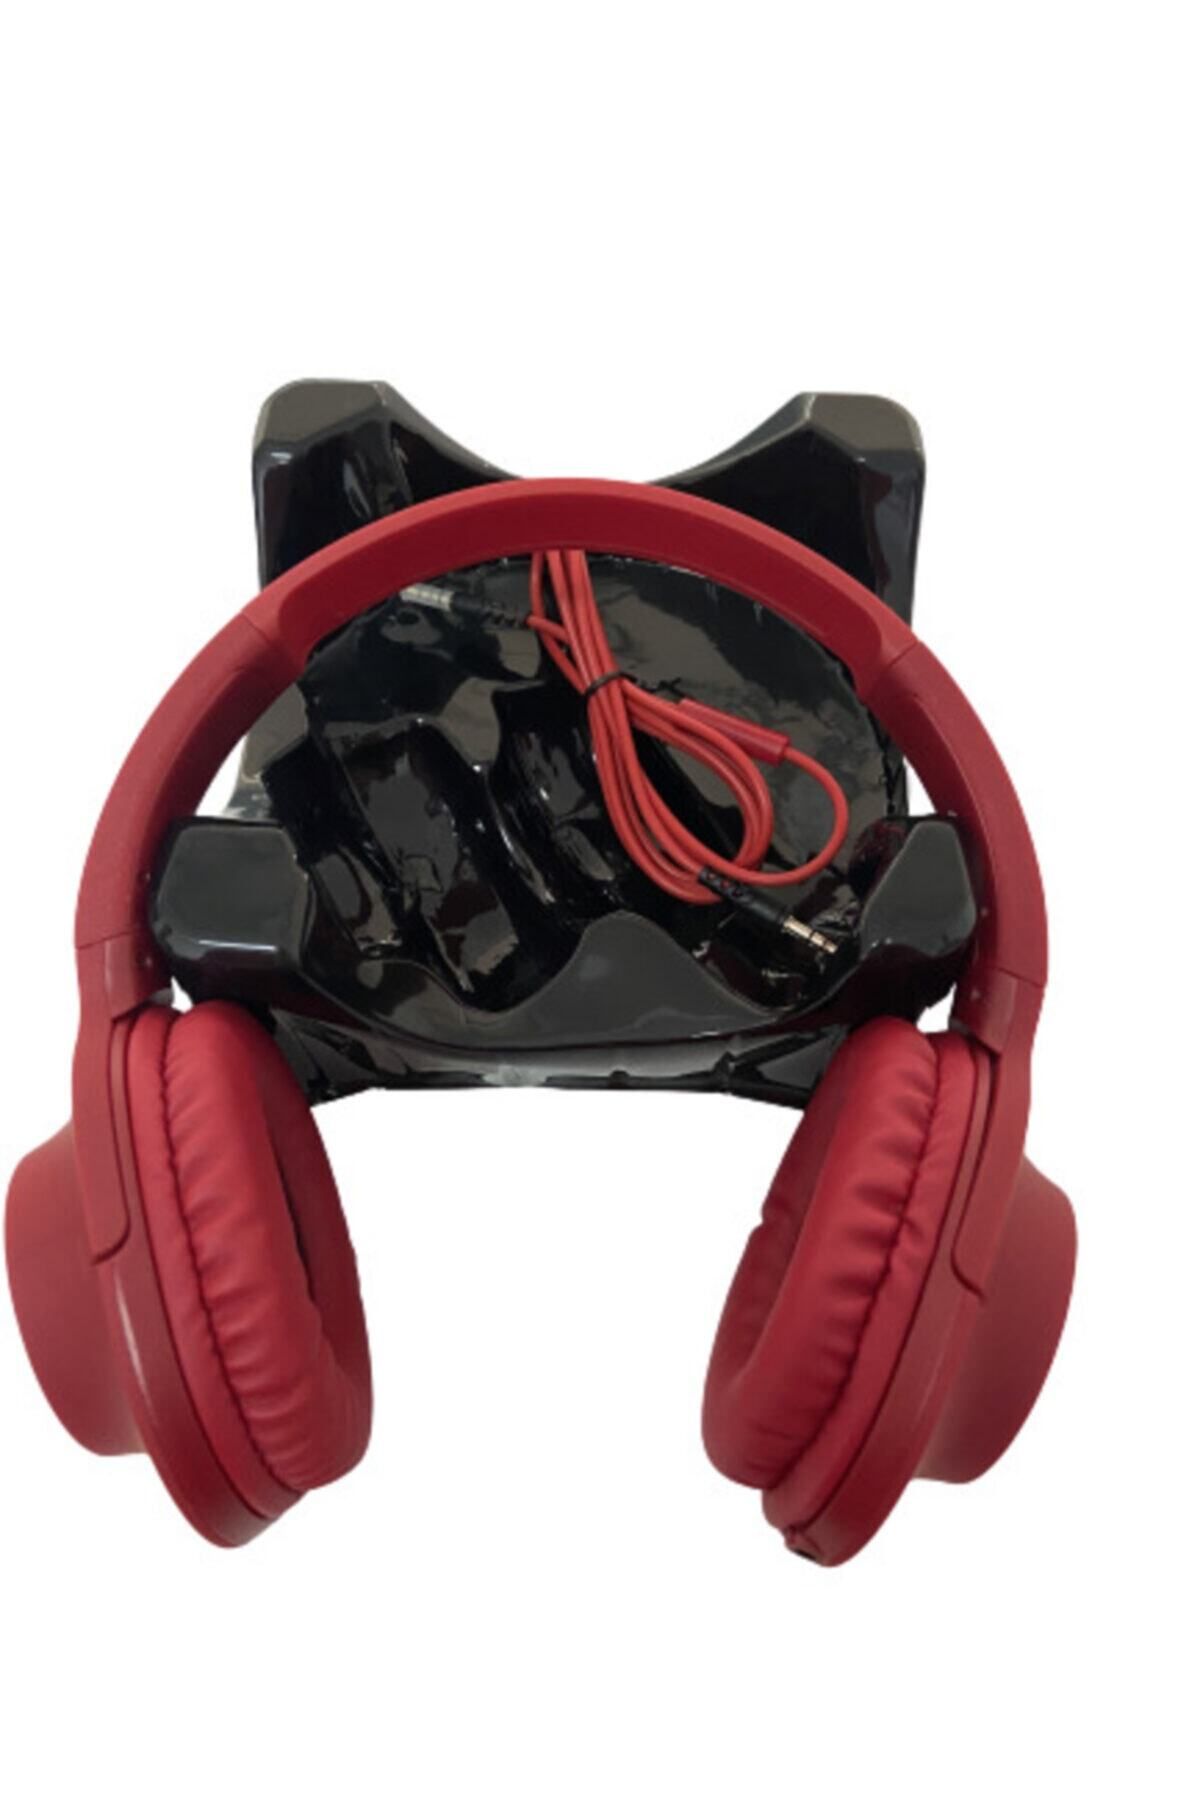 Teknoloji Gelsin Kablolu Kulaklık Kulak Üstü Extra Bass Mikrofonlu Uzaktan Eğitime Uygun Kulaklık